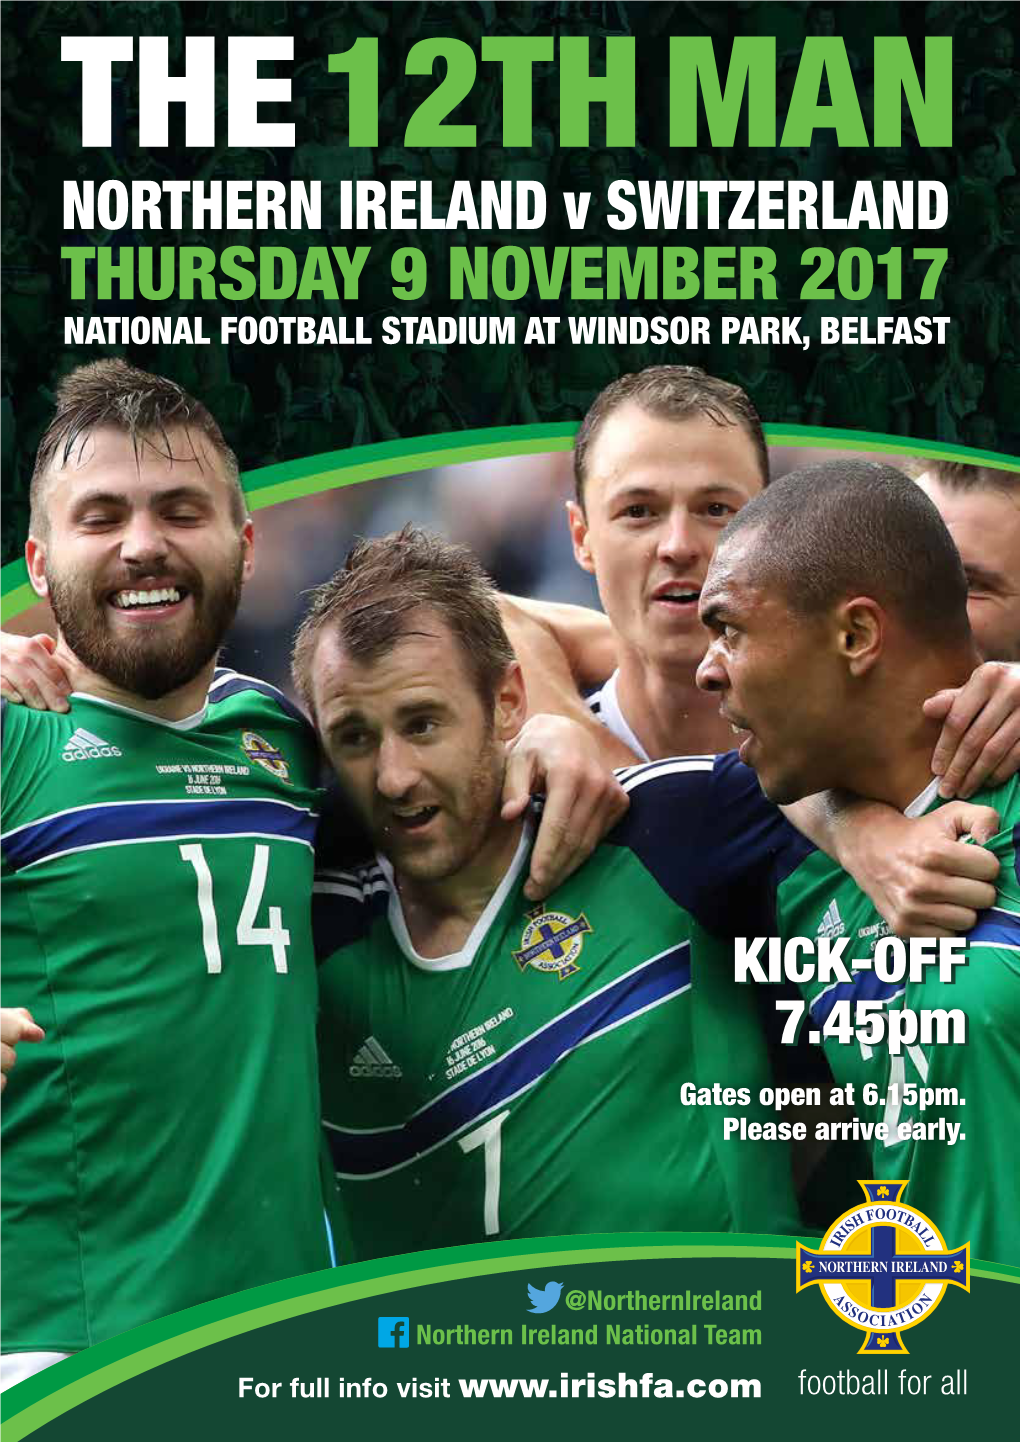 Thursday 9 November 2017 National Football Stadium at Windsor Park, Belfast